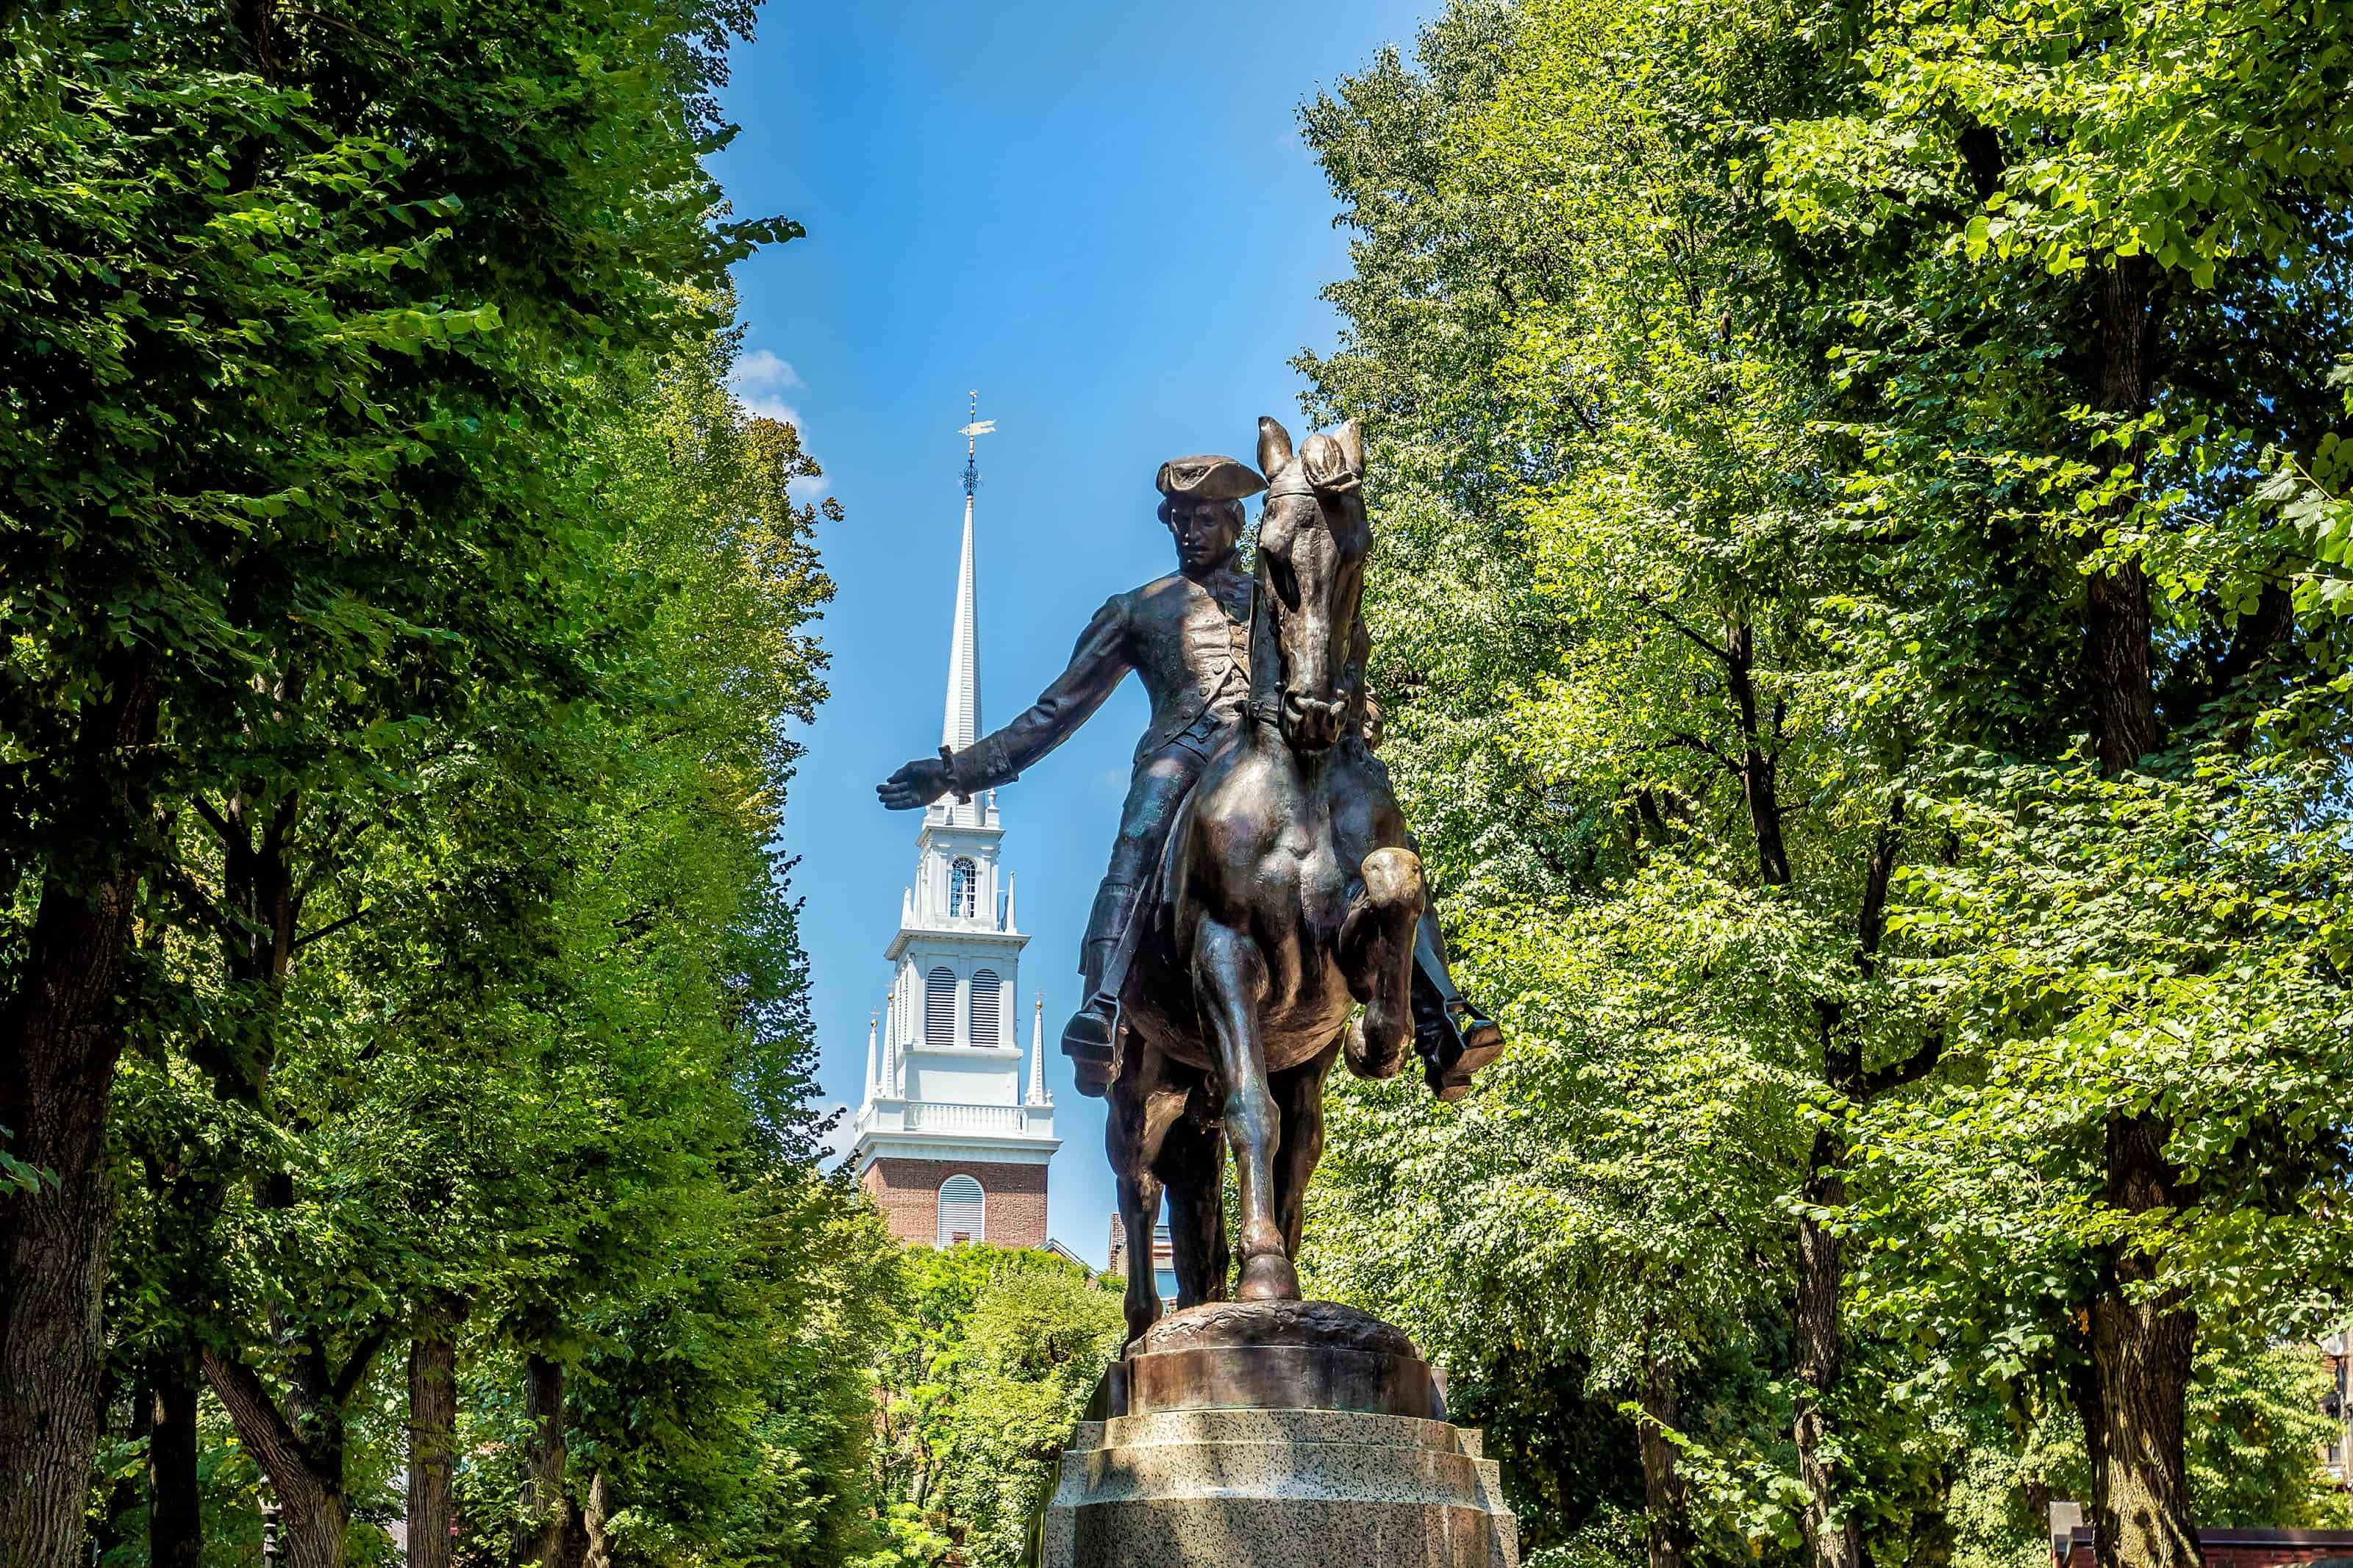 Paul Revere Statue in Boston, Massachusetts